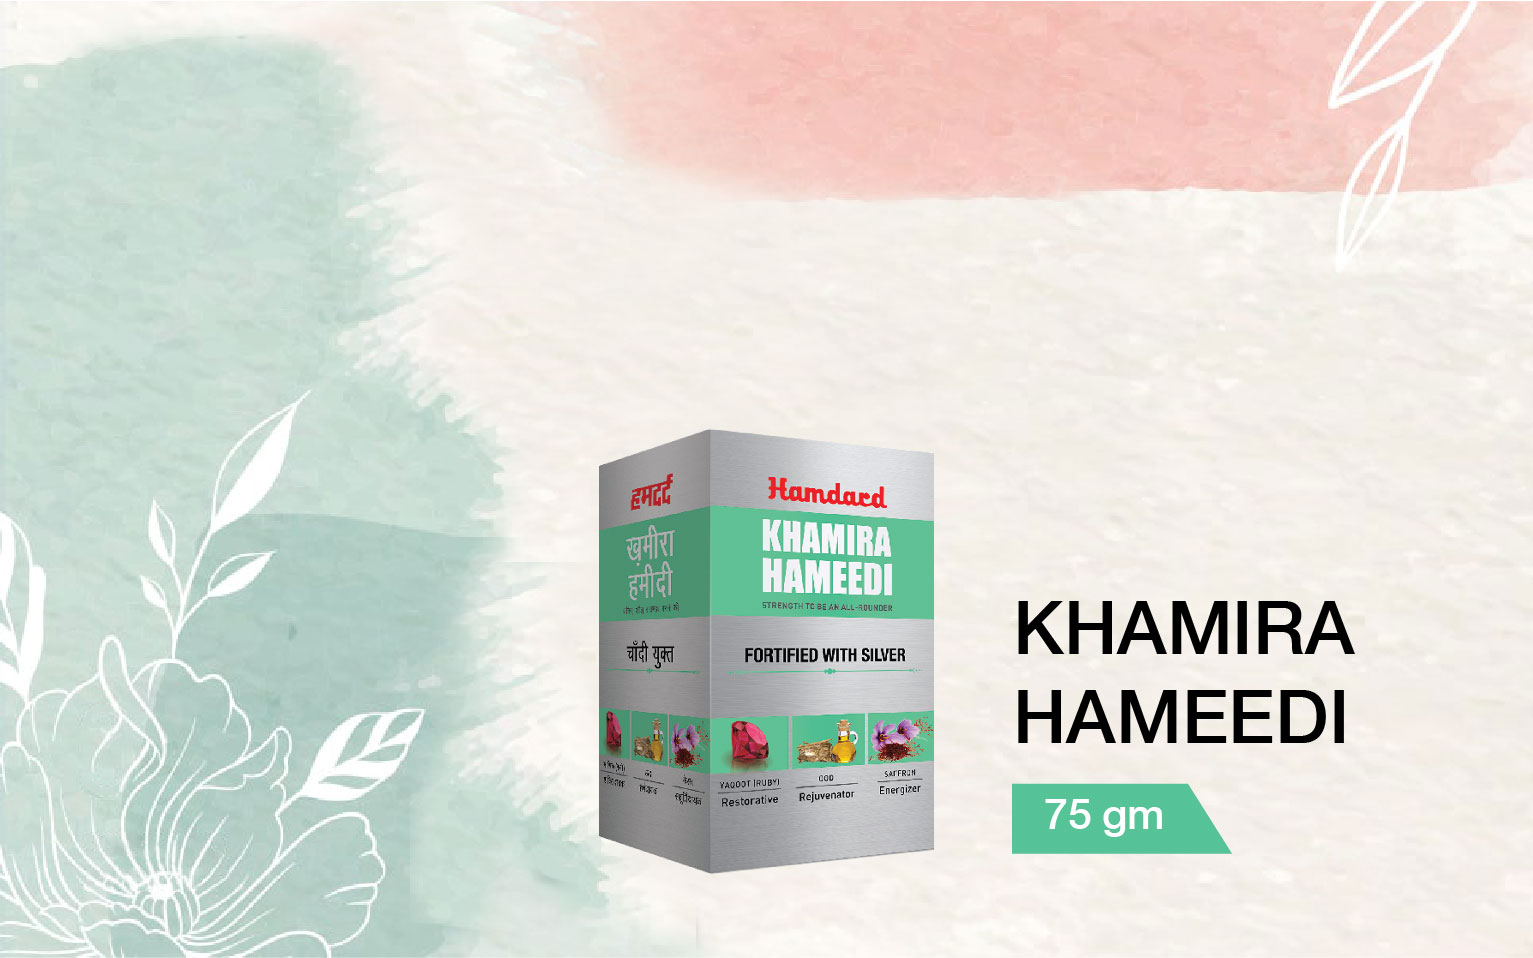 Khamira hameedi